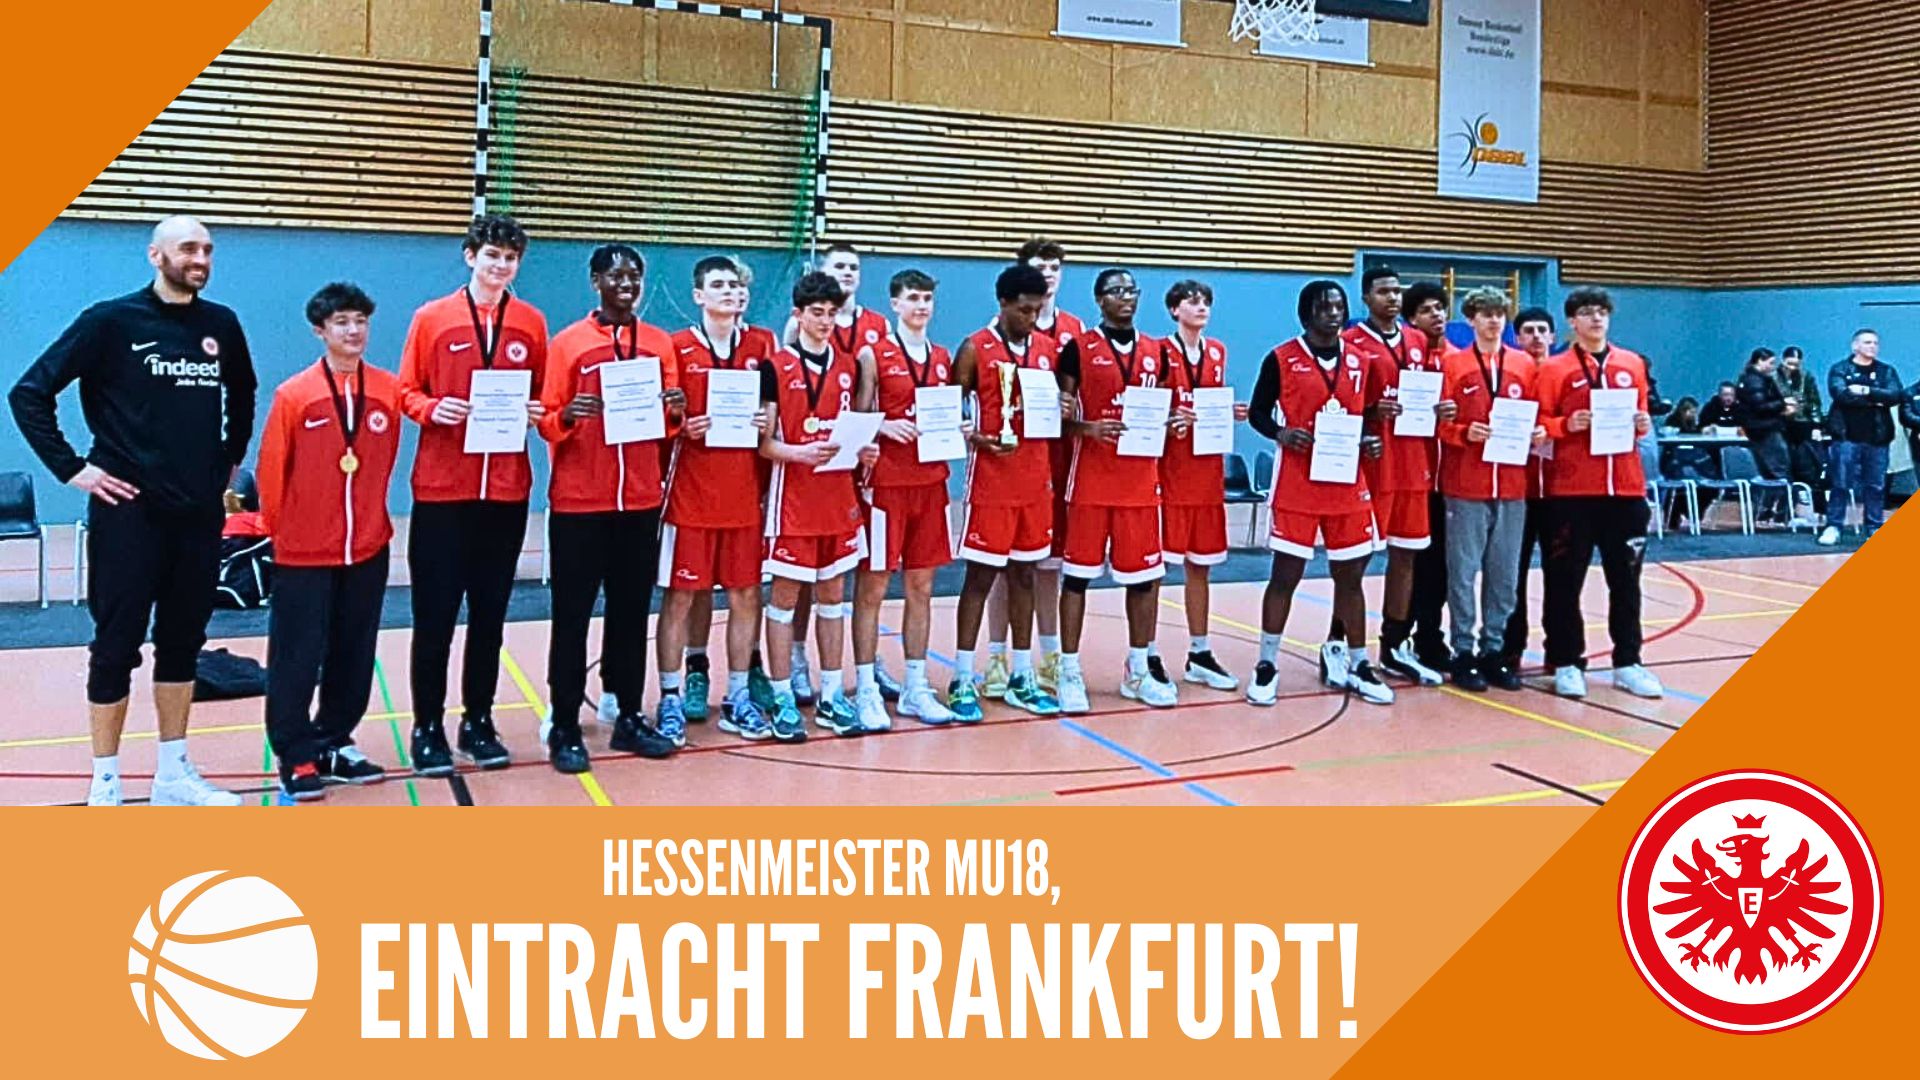 Hessenmeister der MU18 – Eintracht Frankfurt